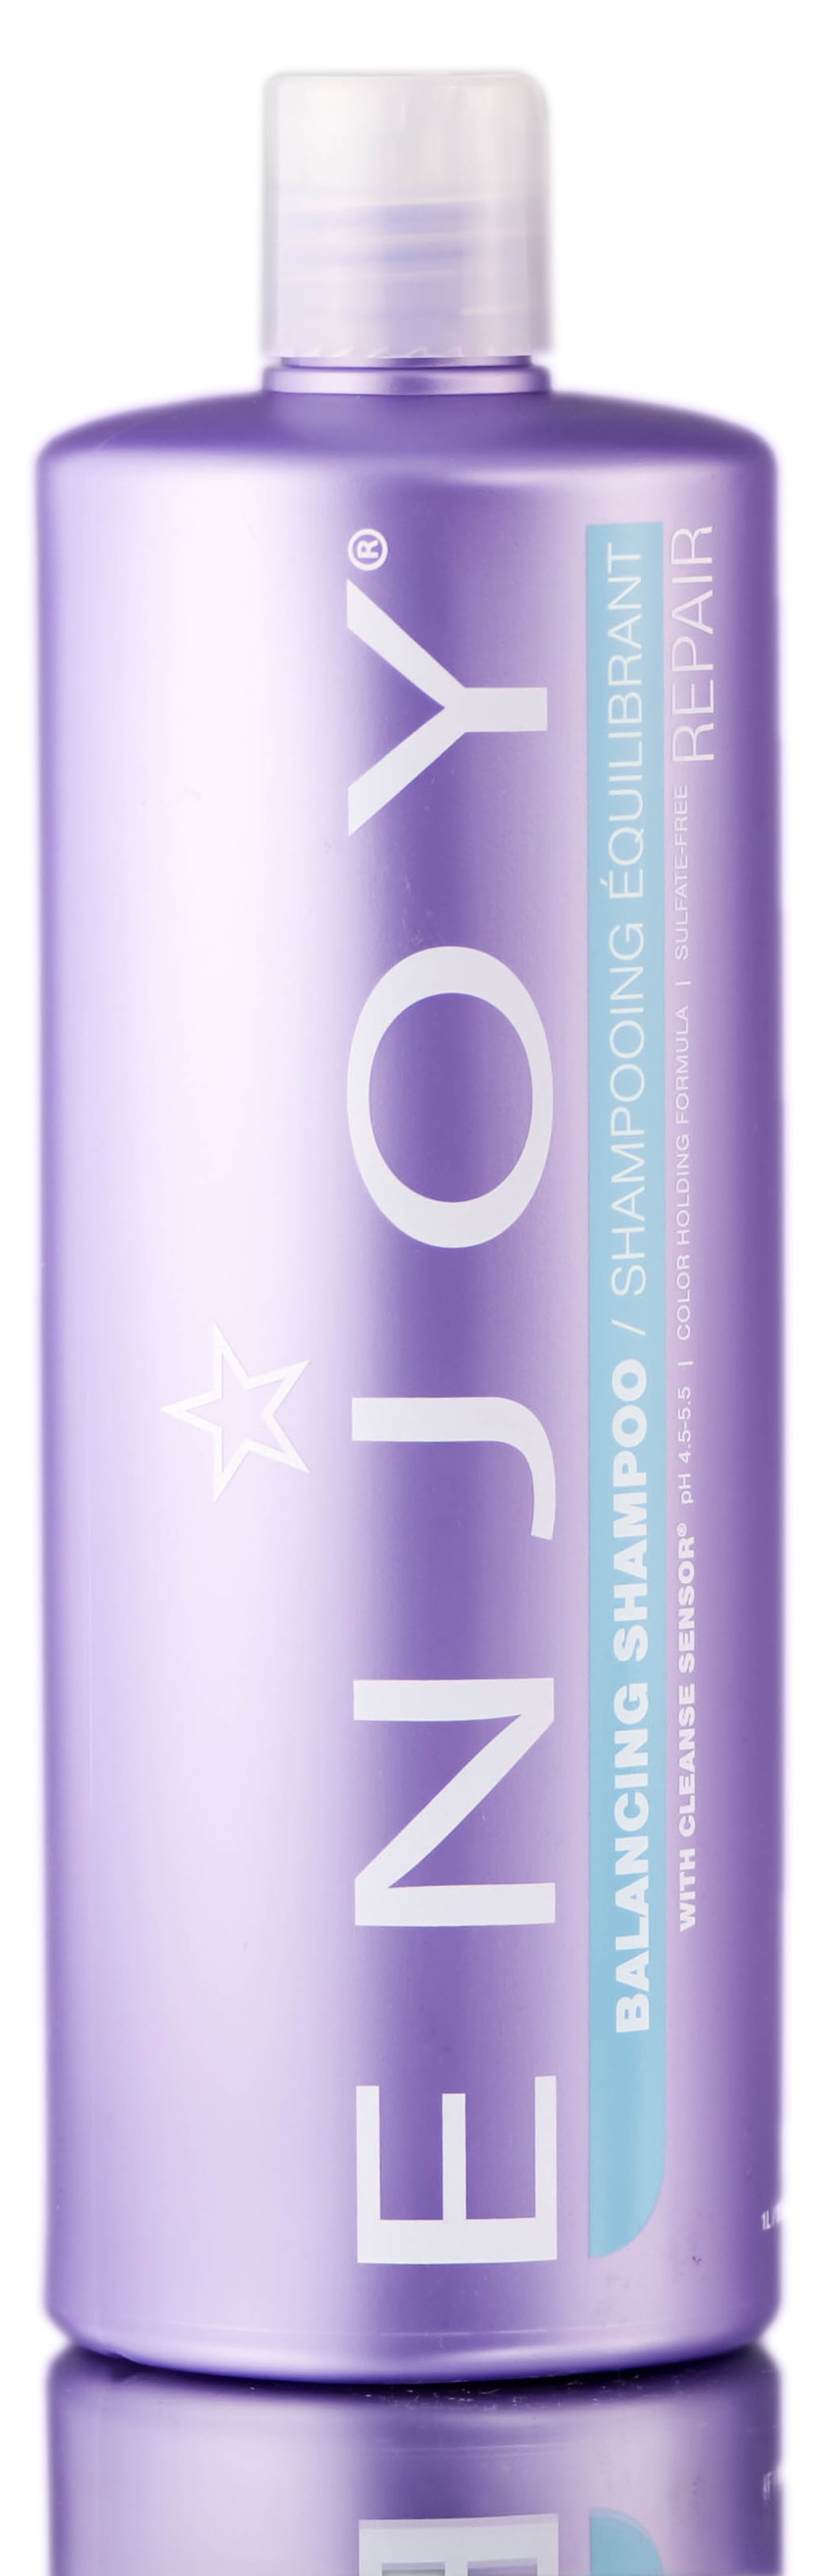 Enjoy Shampoo with Cleanse Sensor - 33.8 -